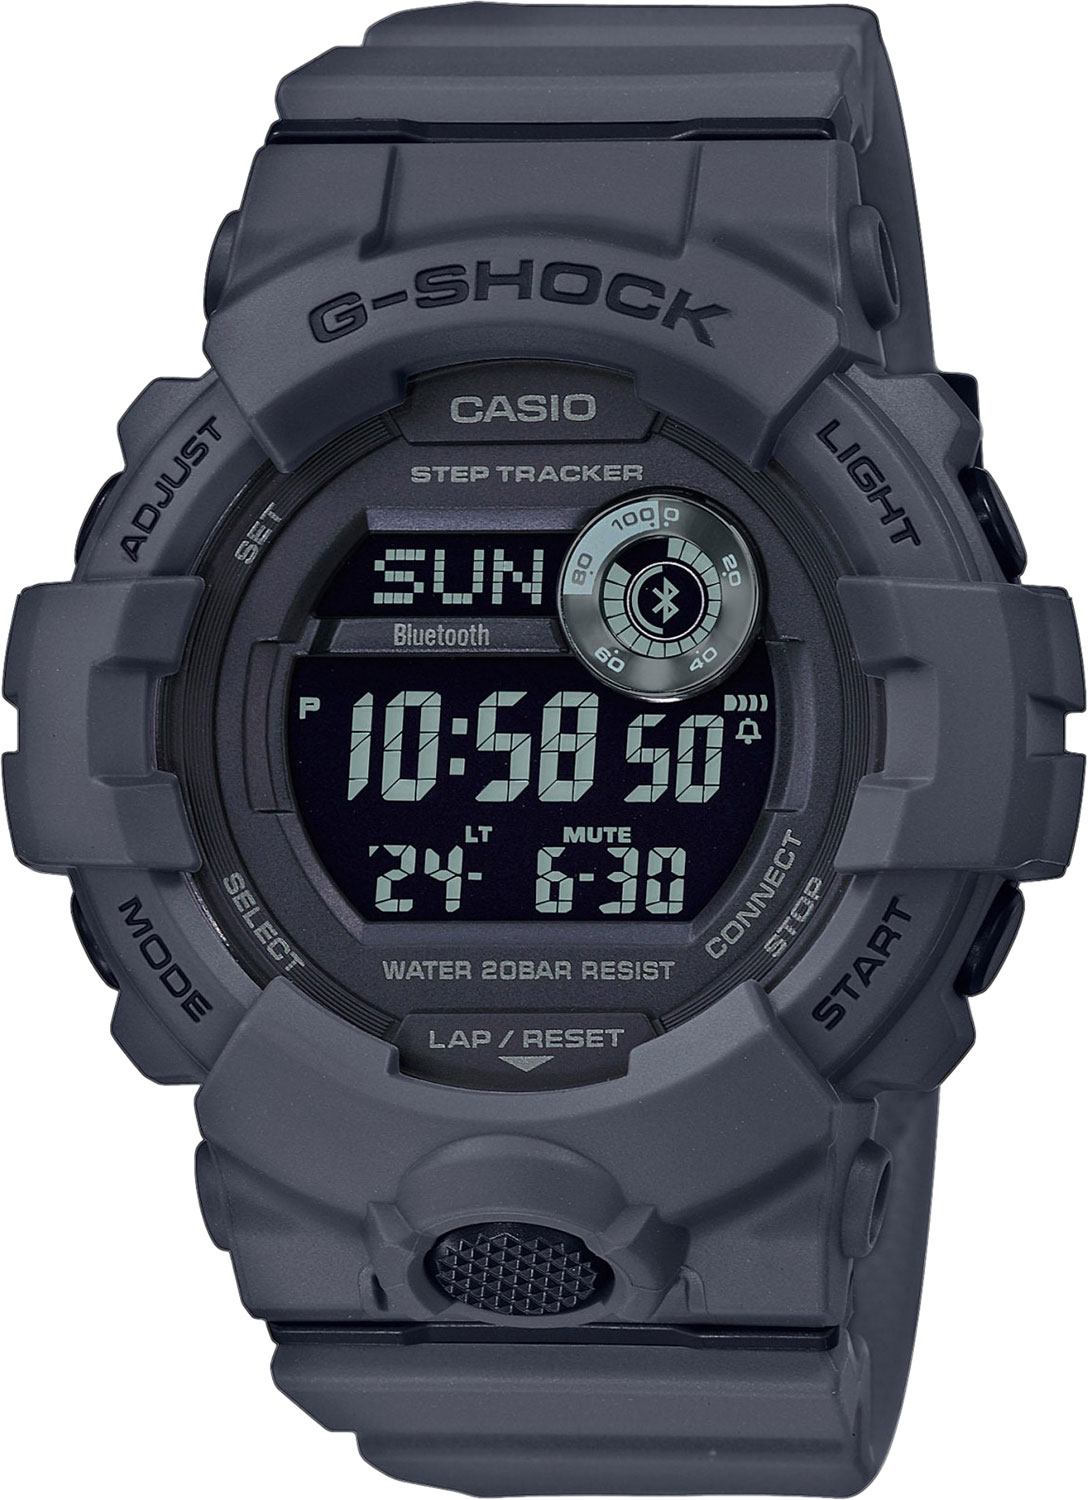 Японские спортивные наручные часы Casio G-SHOCK GBD-800UC-8ER с хронографом